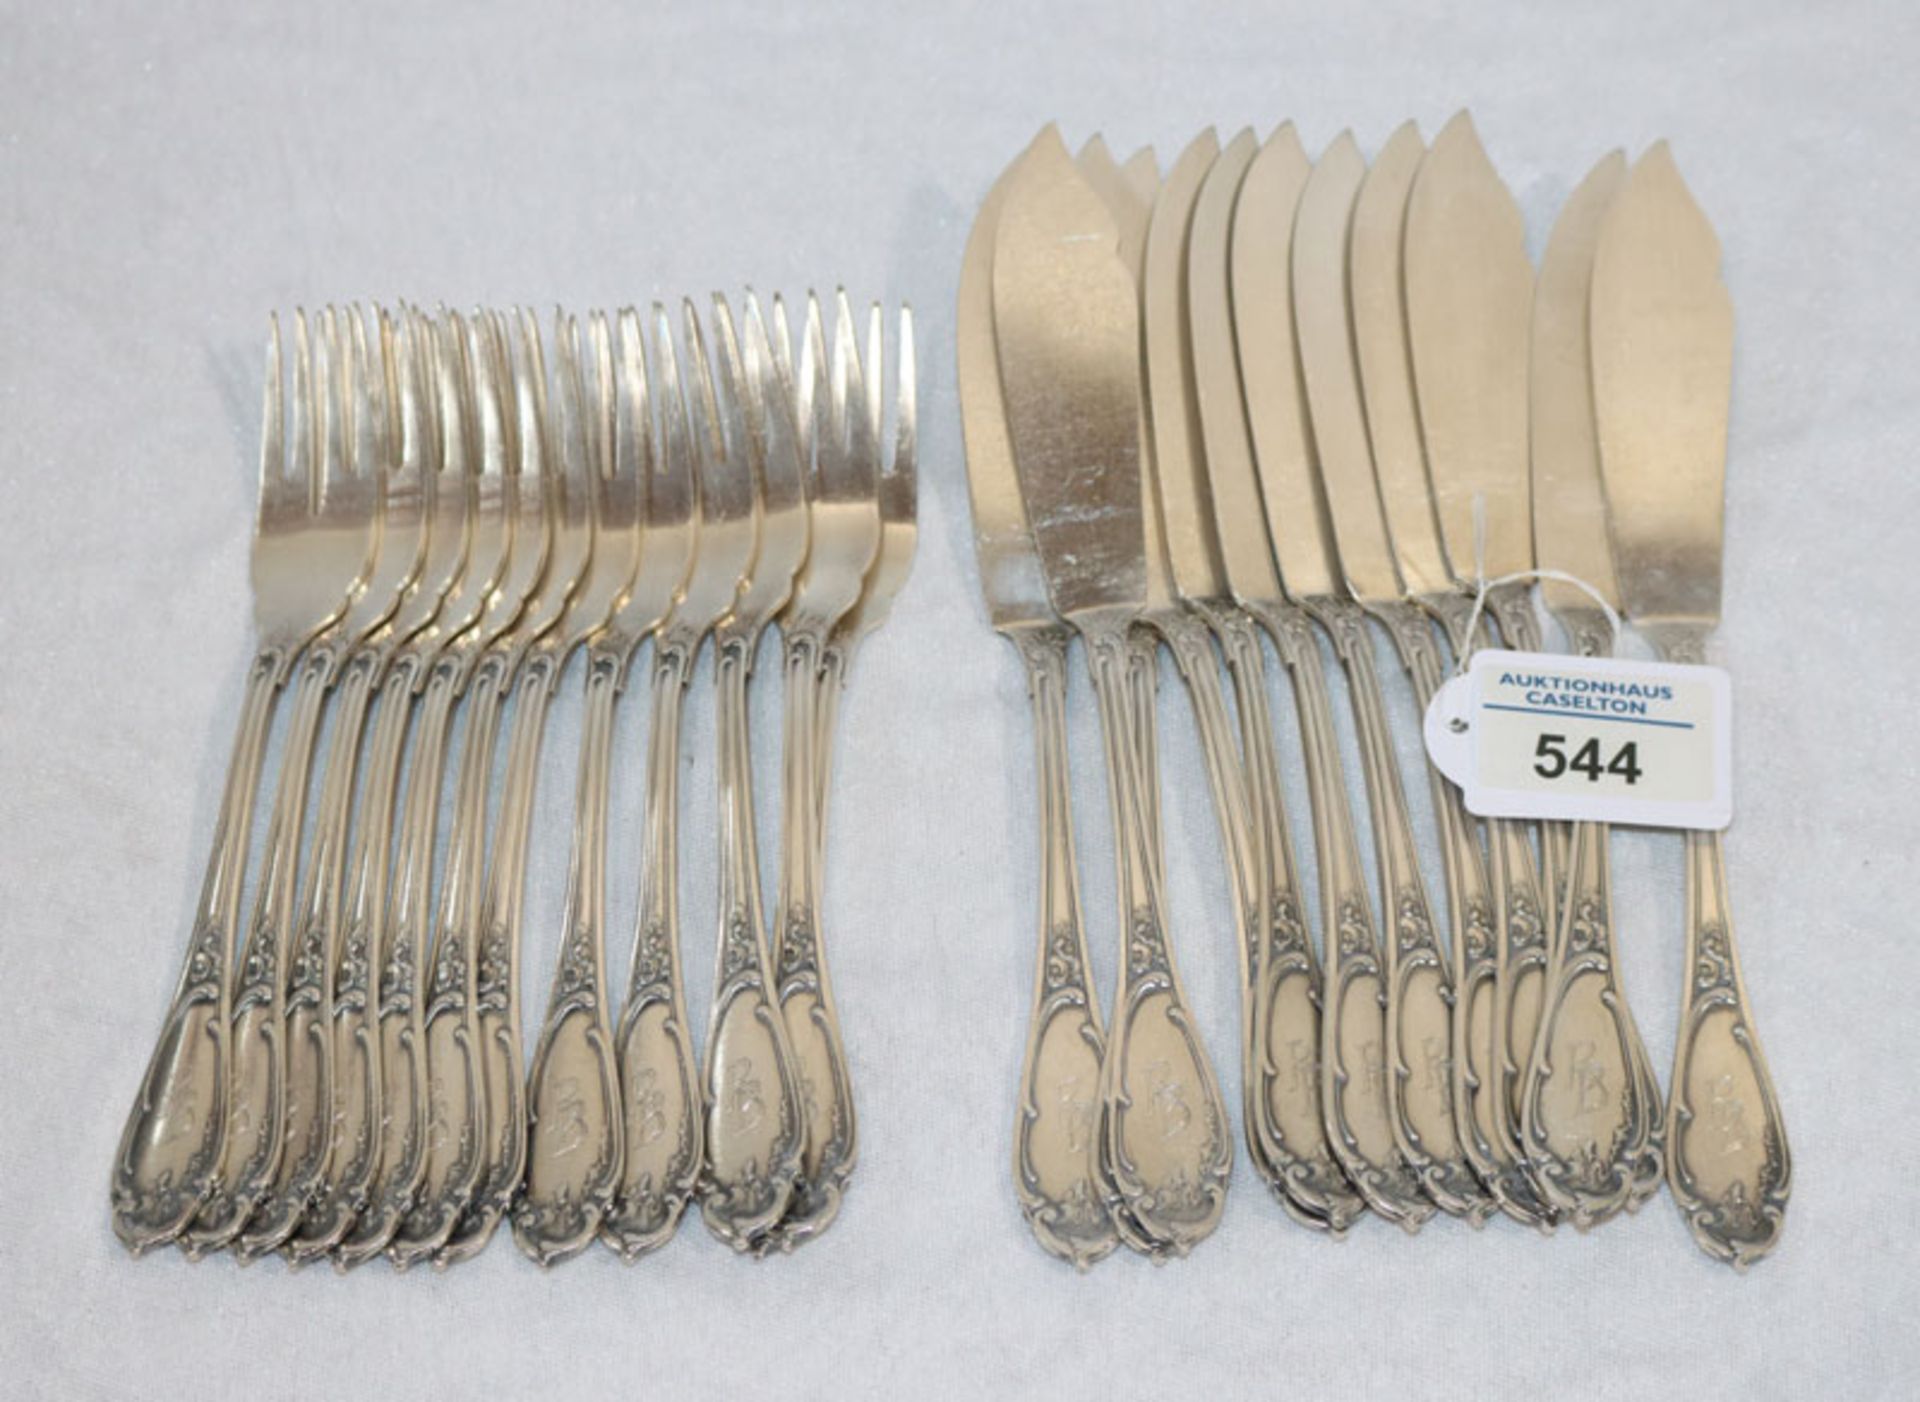 Fischbesteck, 800 Silber, 1195 gr., 12 Gabeln und 12 Messer mit Monogrammgravur RB, Gebrauchsspuren